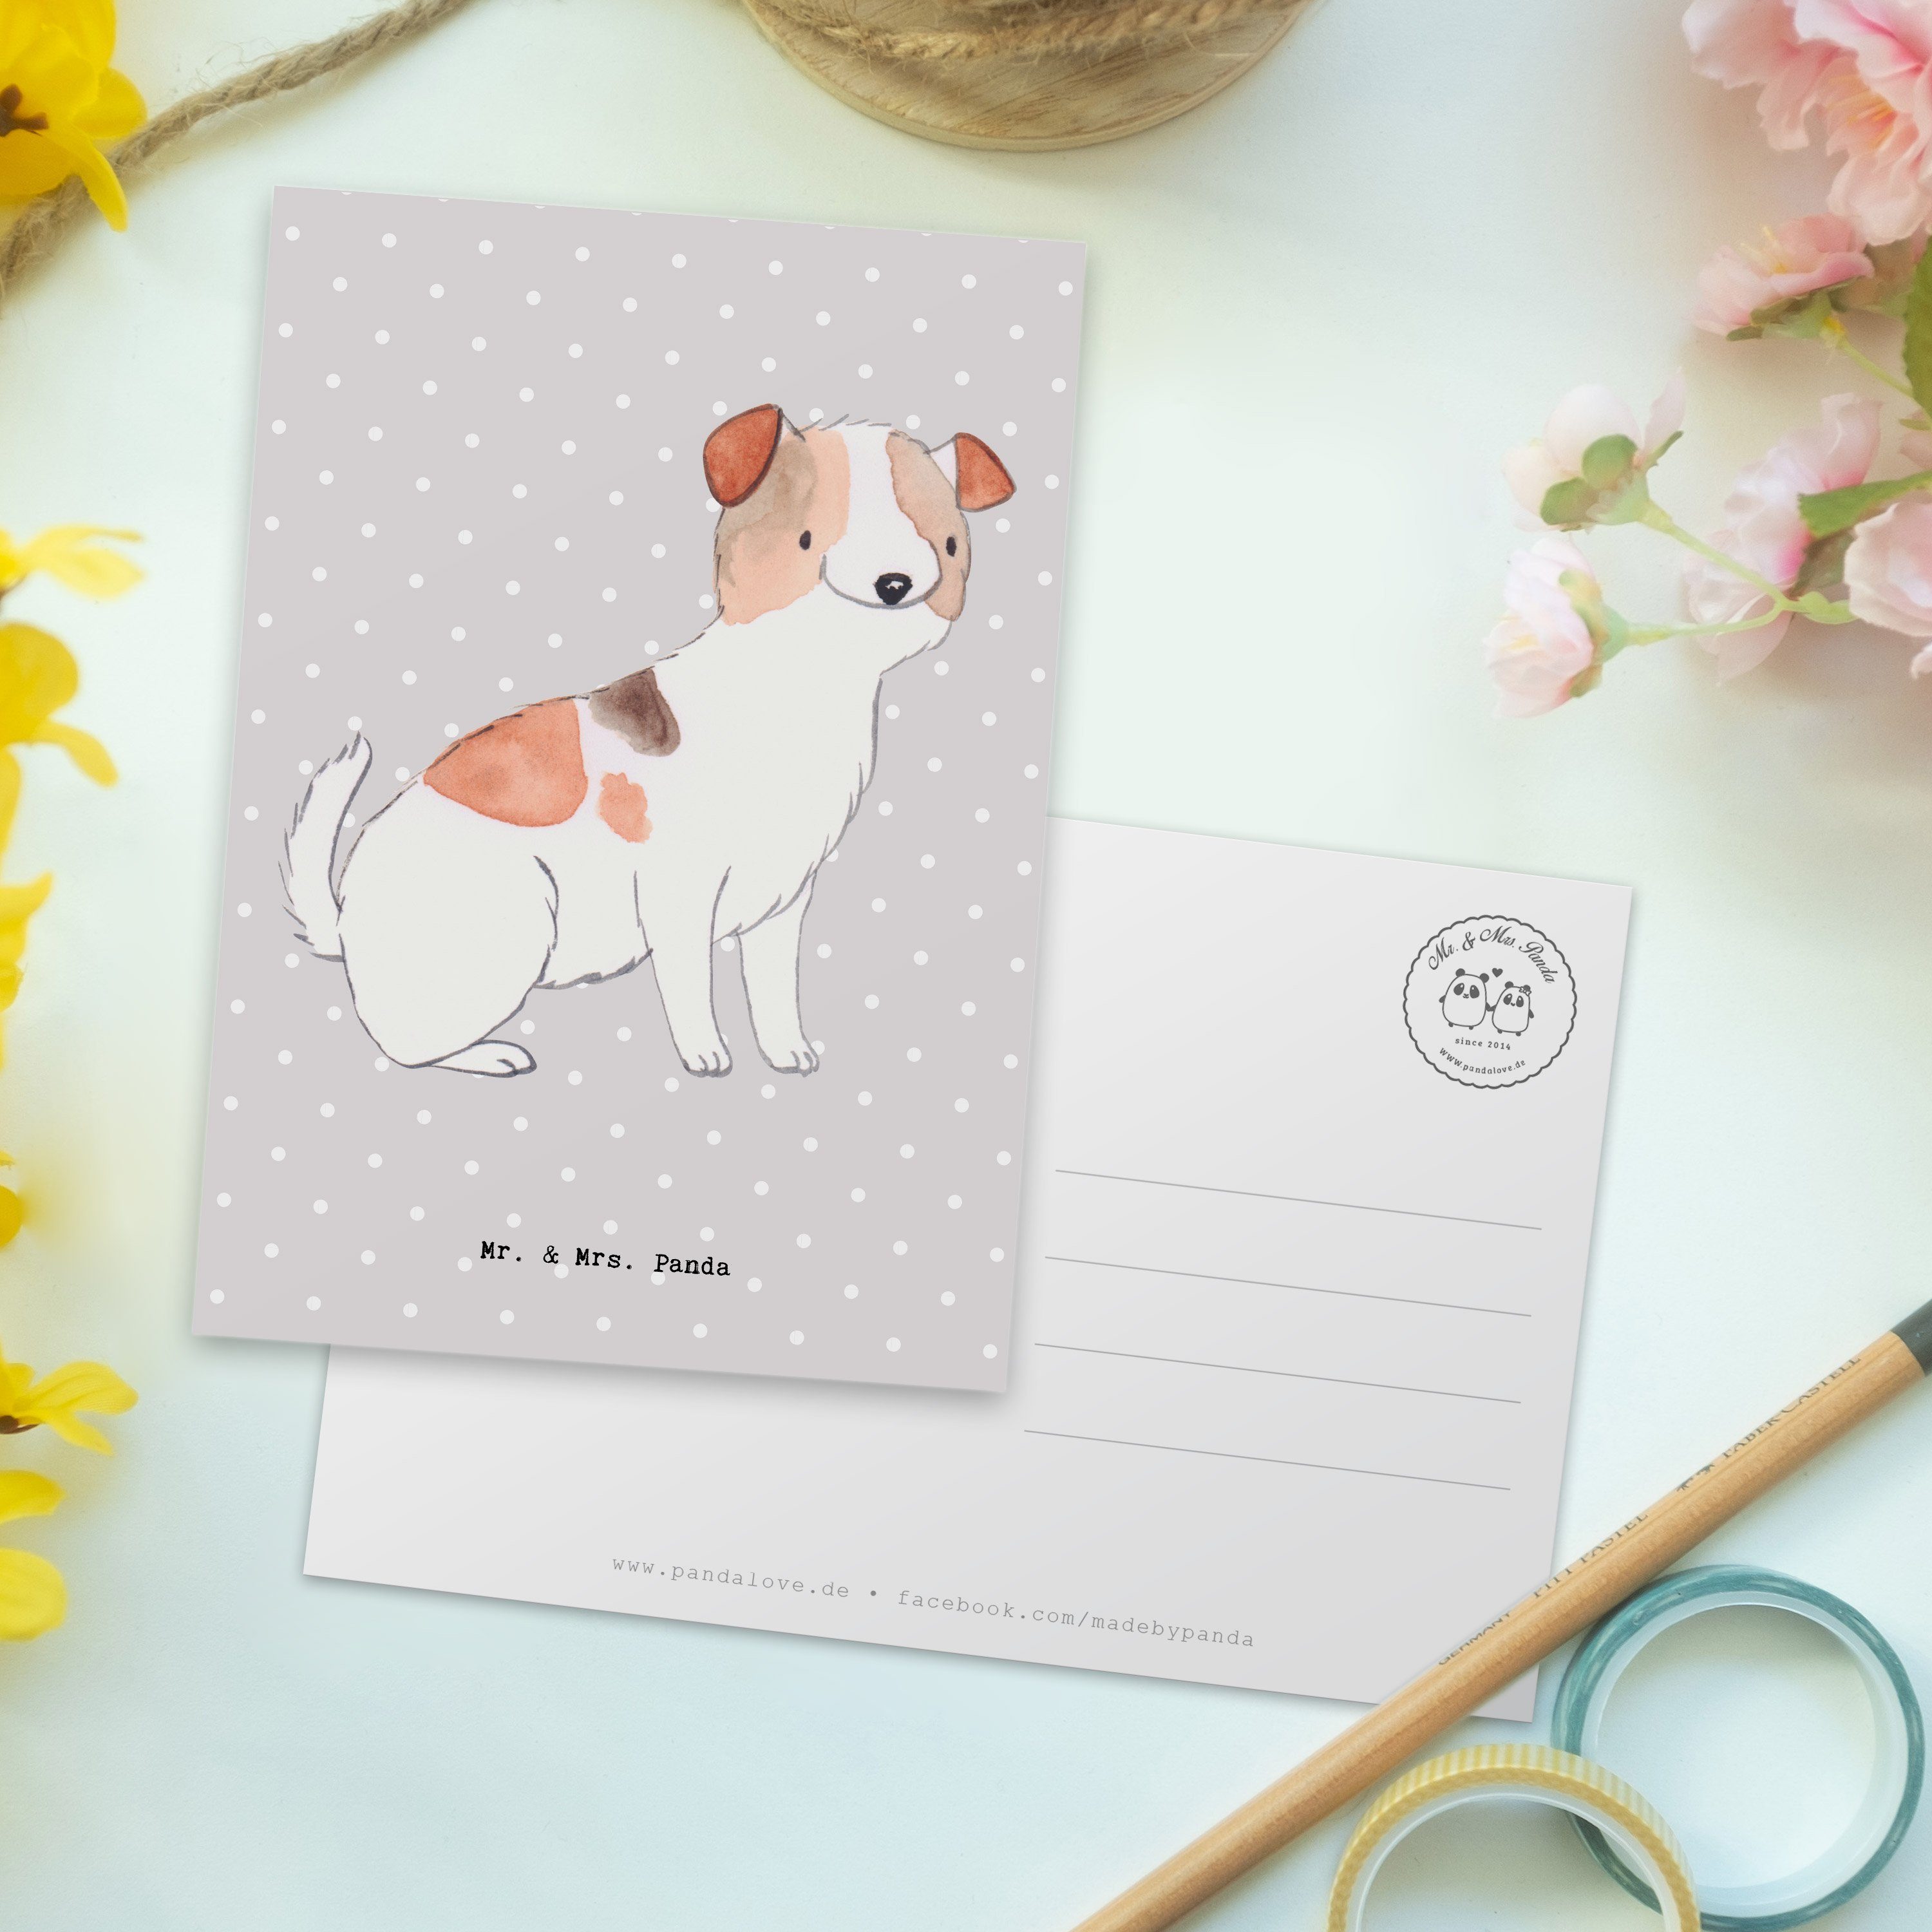 Mrs. Mr. Pastell Ges - Einladung, Terrier Panda Russell Postkarte - Grau Jack Moment Geschenk, &